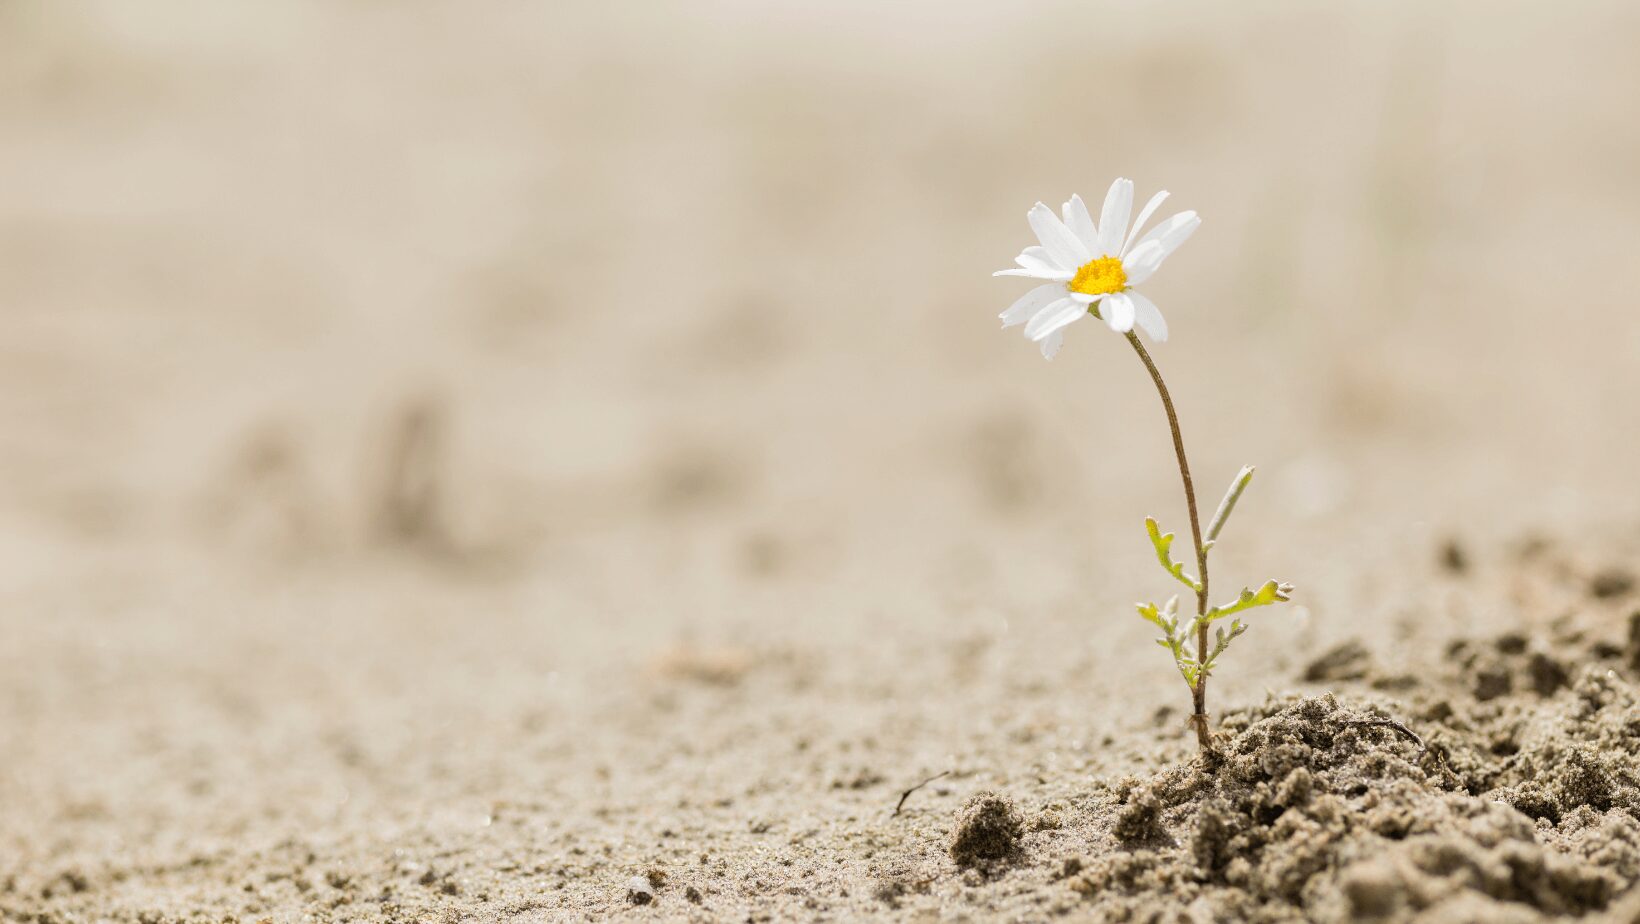 símbolo de resistencia porque una flor florece en un suelo seco y estéril.